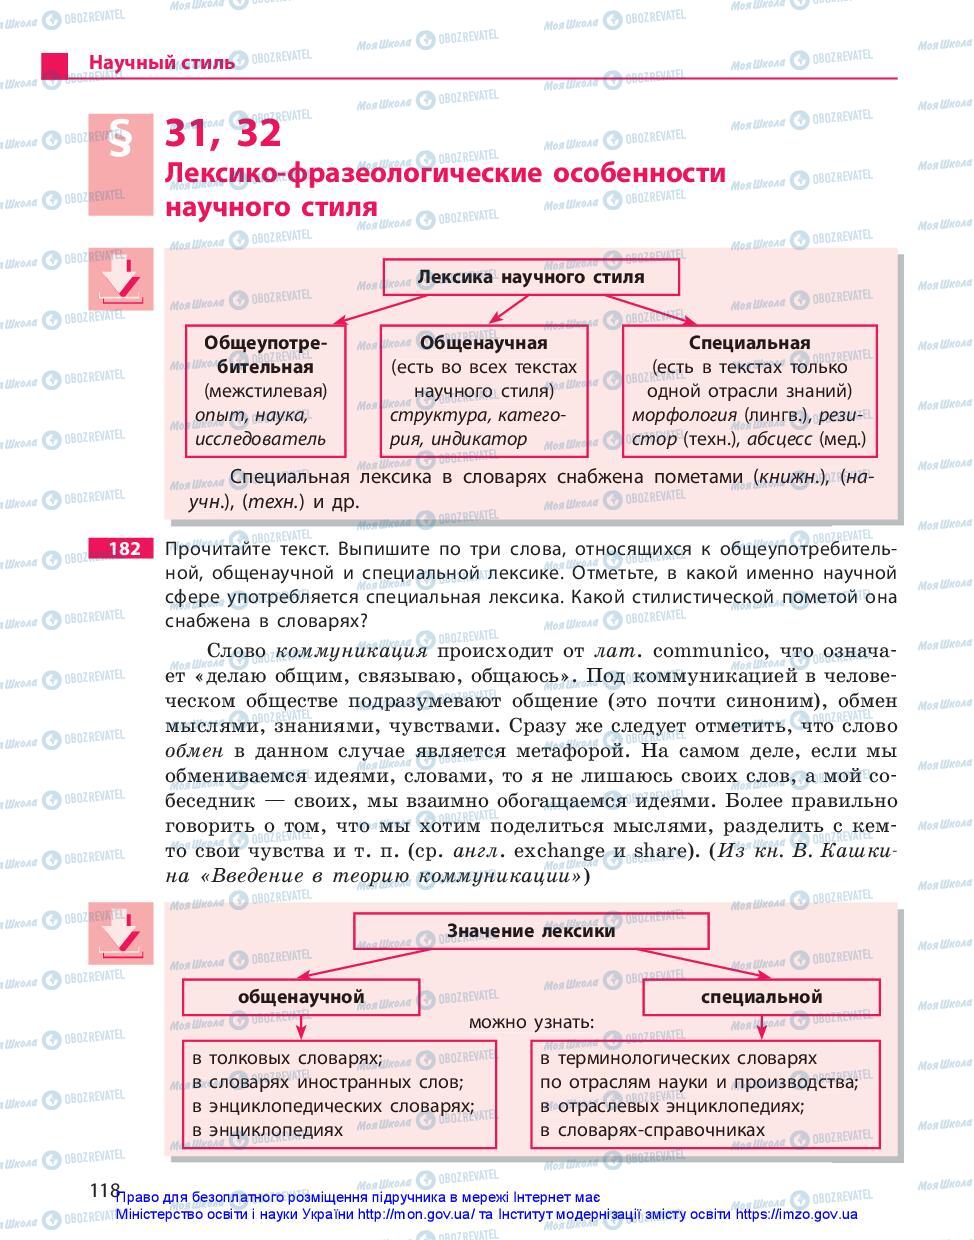 Учебники Русский язык 10 класс страница 118